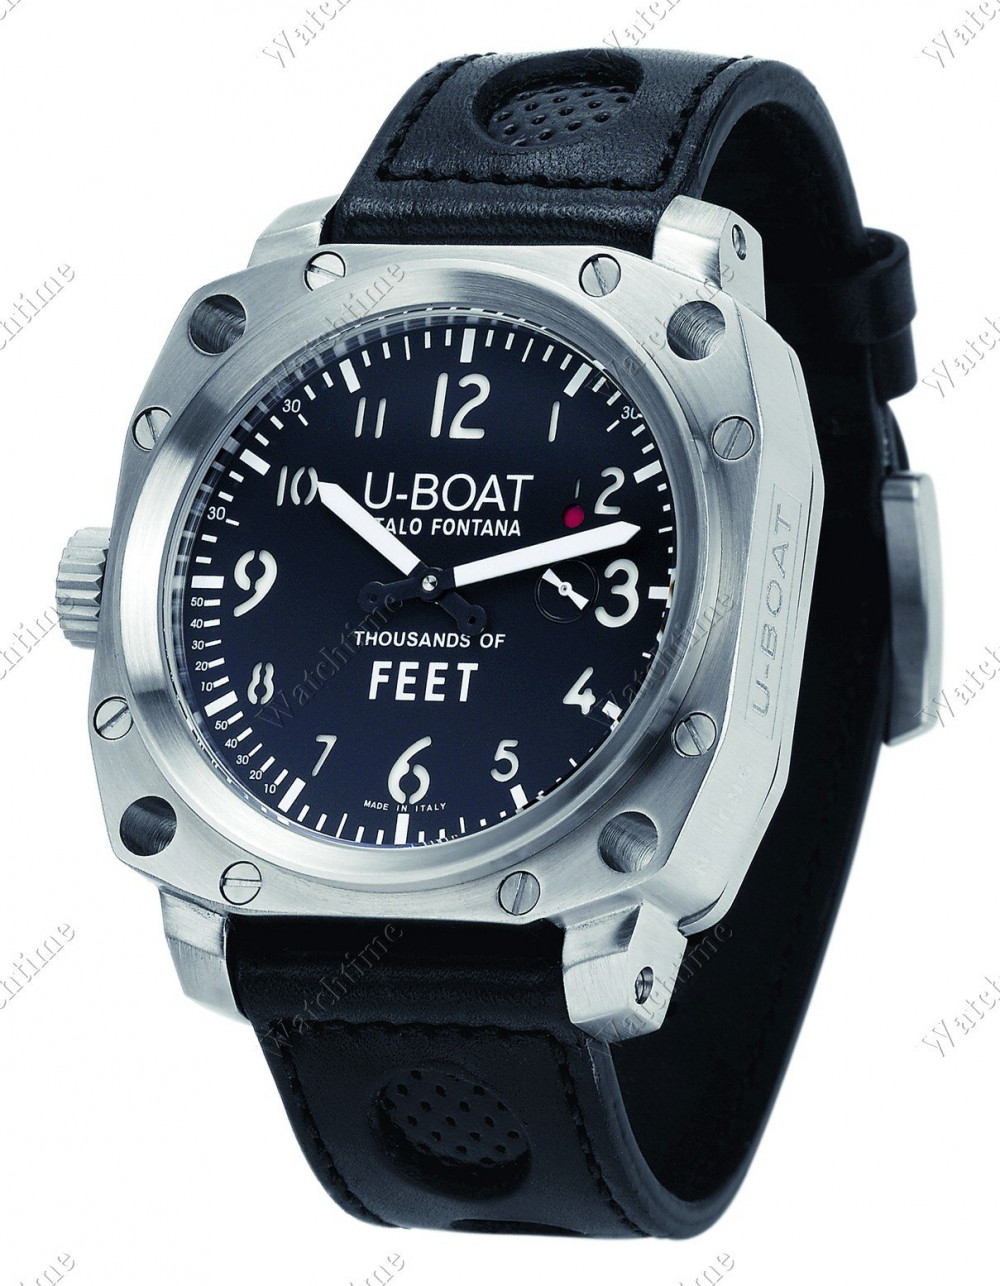 Zegarek firmy U-Boat, model MS3 - Italo Fontana